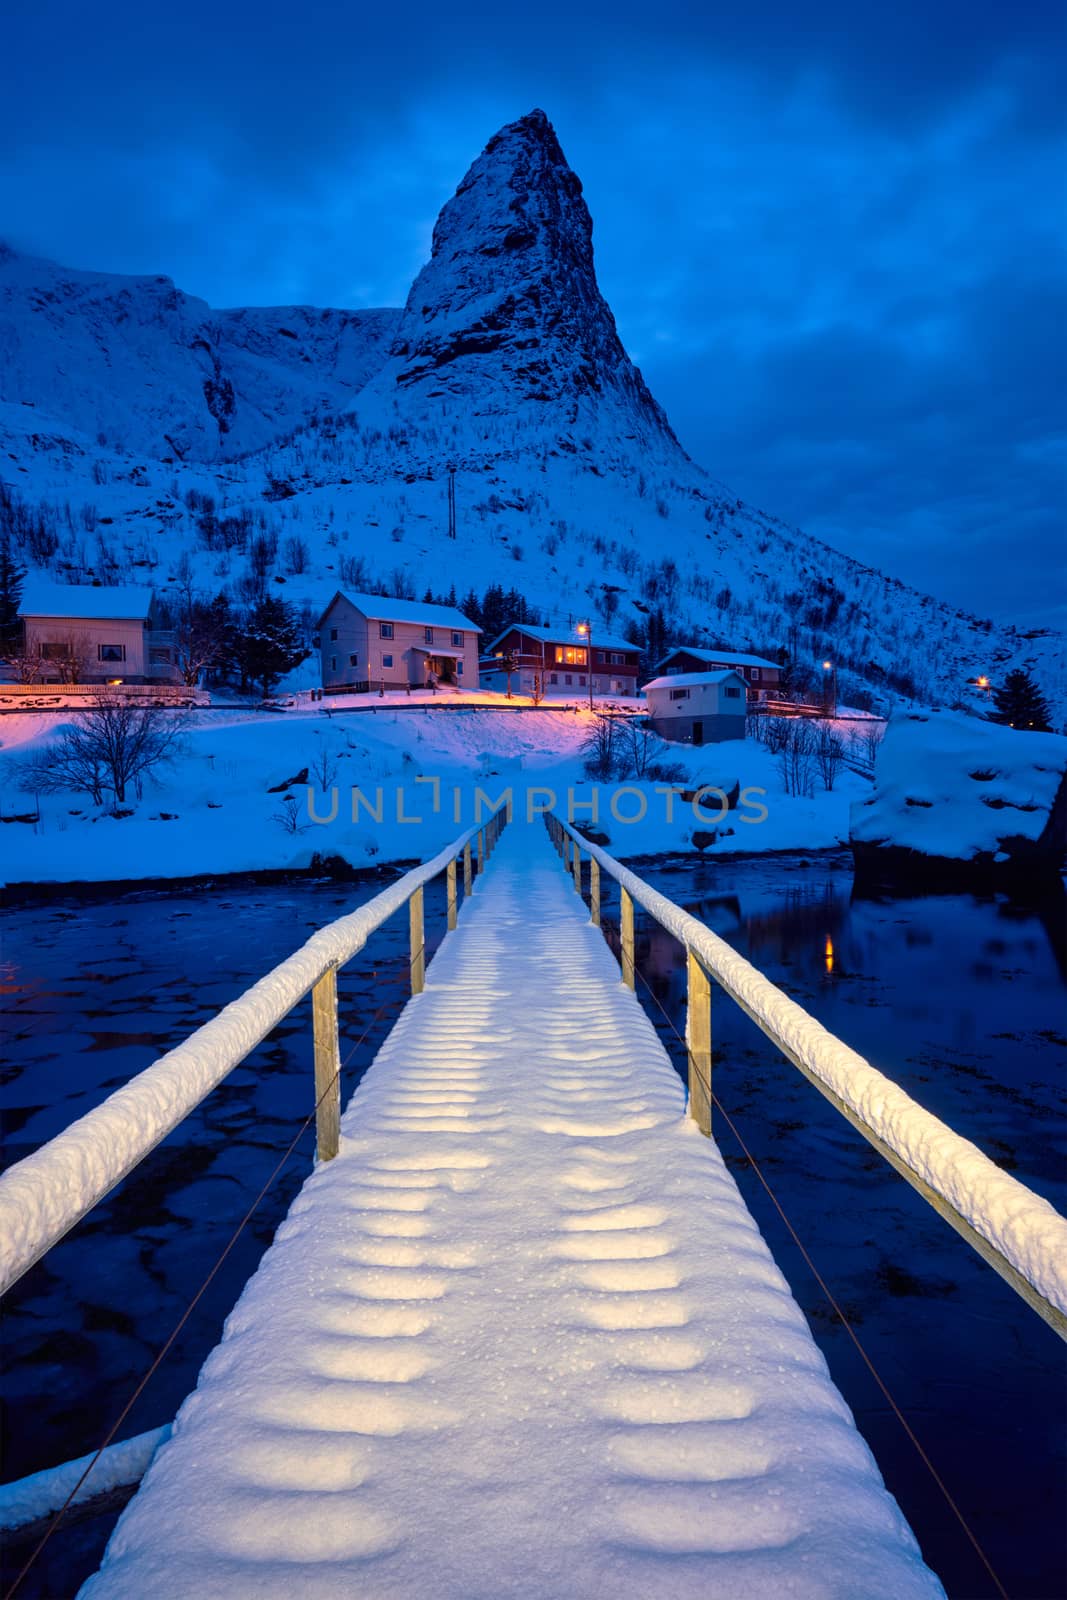 Bridge in Reine village covered with snow at night. Lofoten islands, Norway